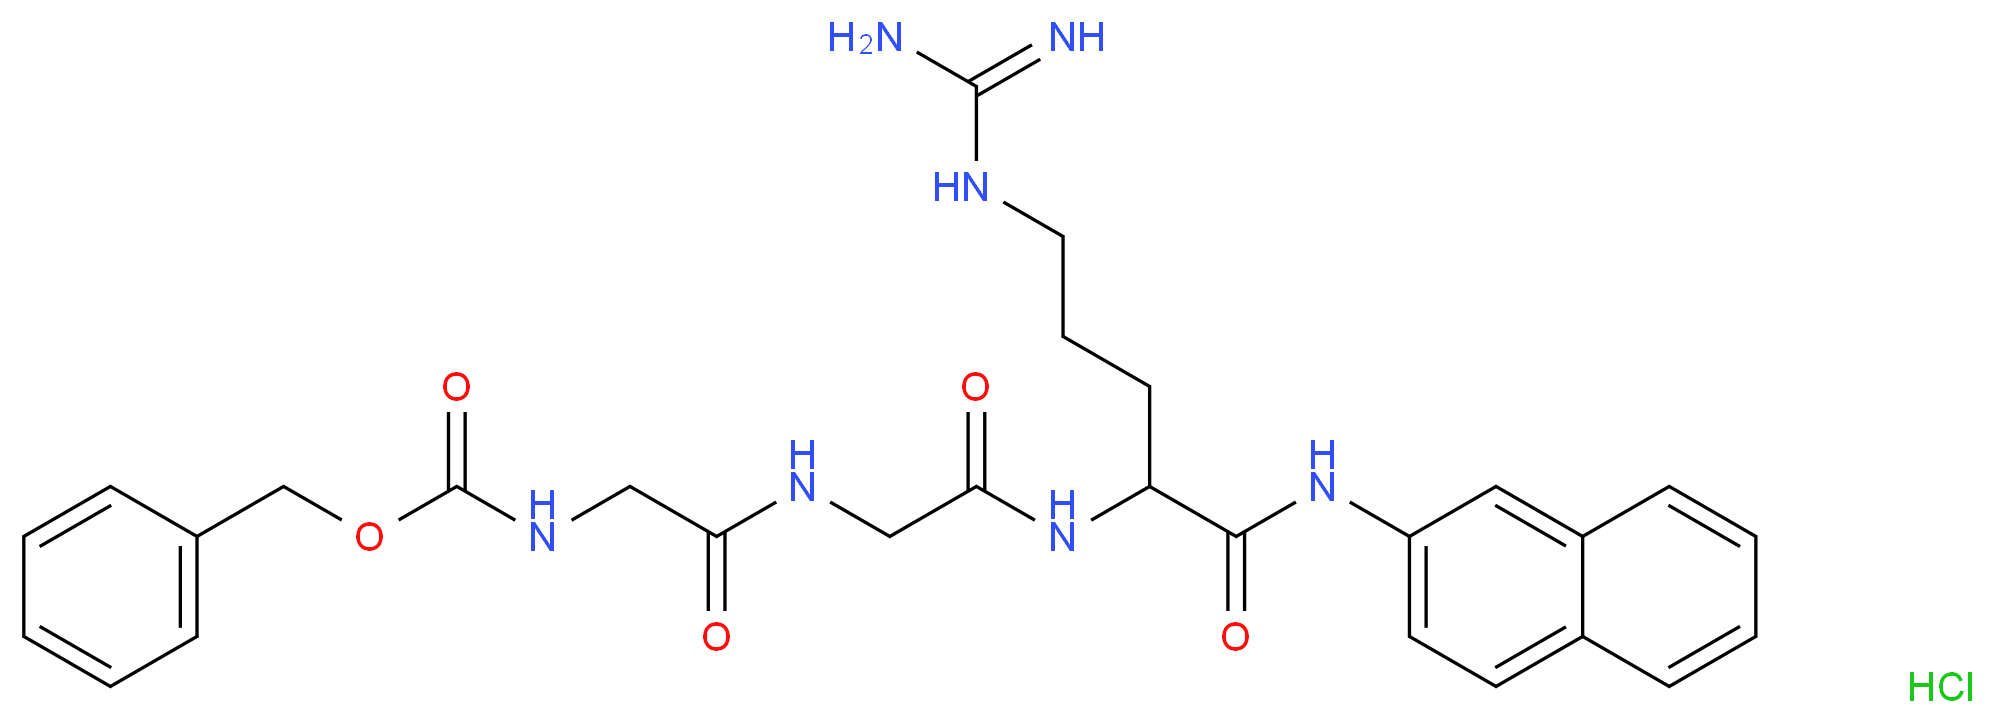 1442-79-1 molecular structure